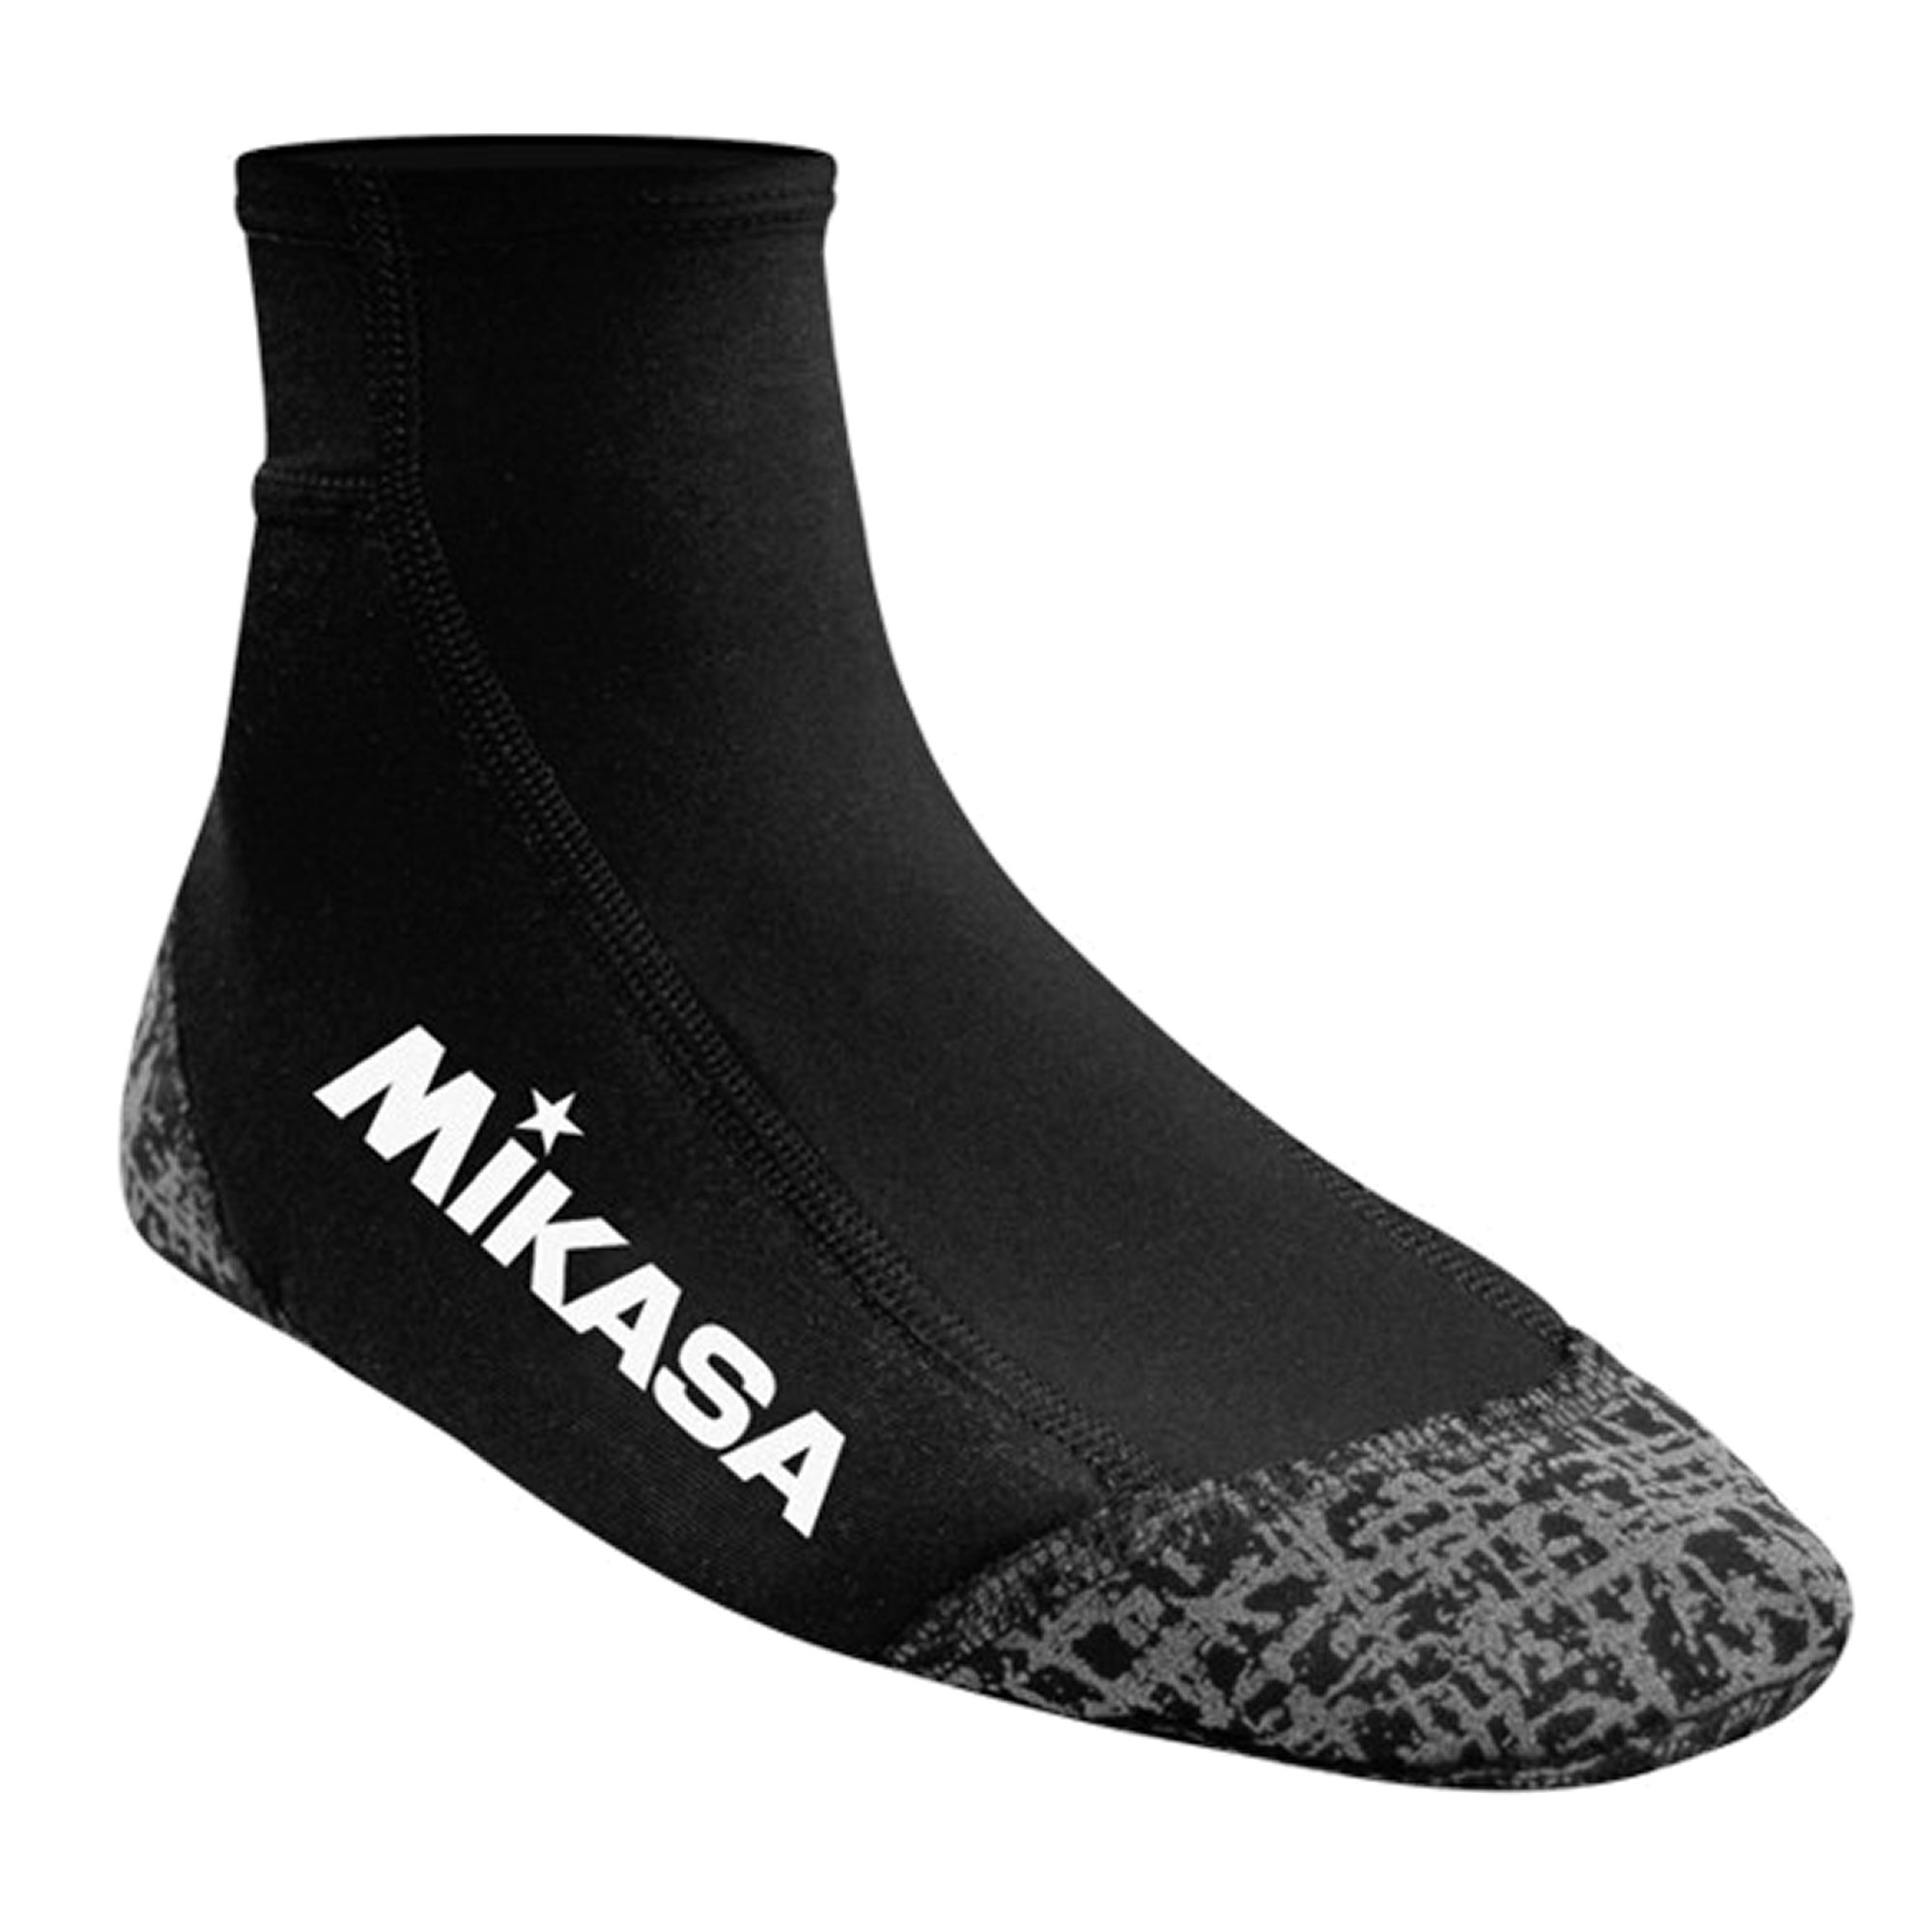 Mikasa Beach Socks